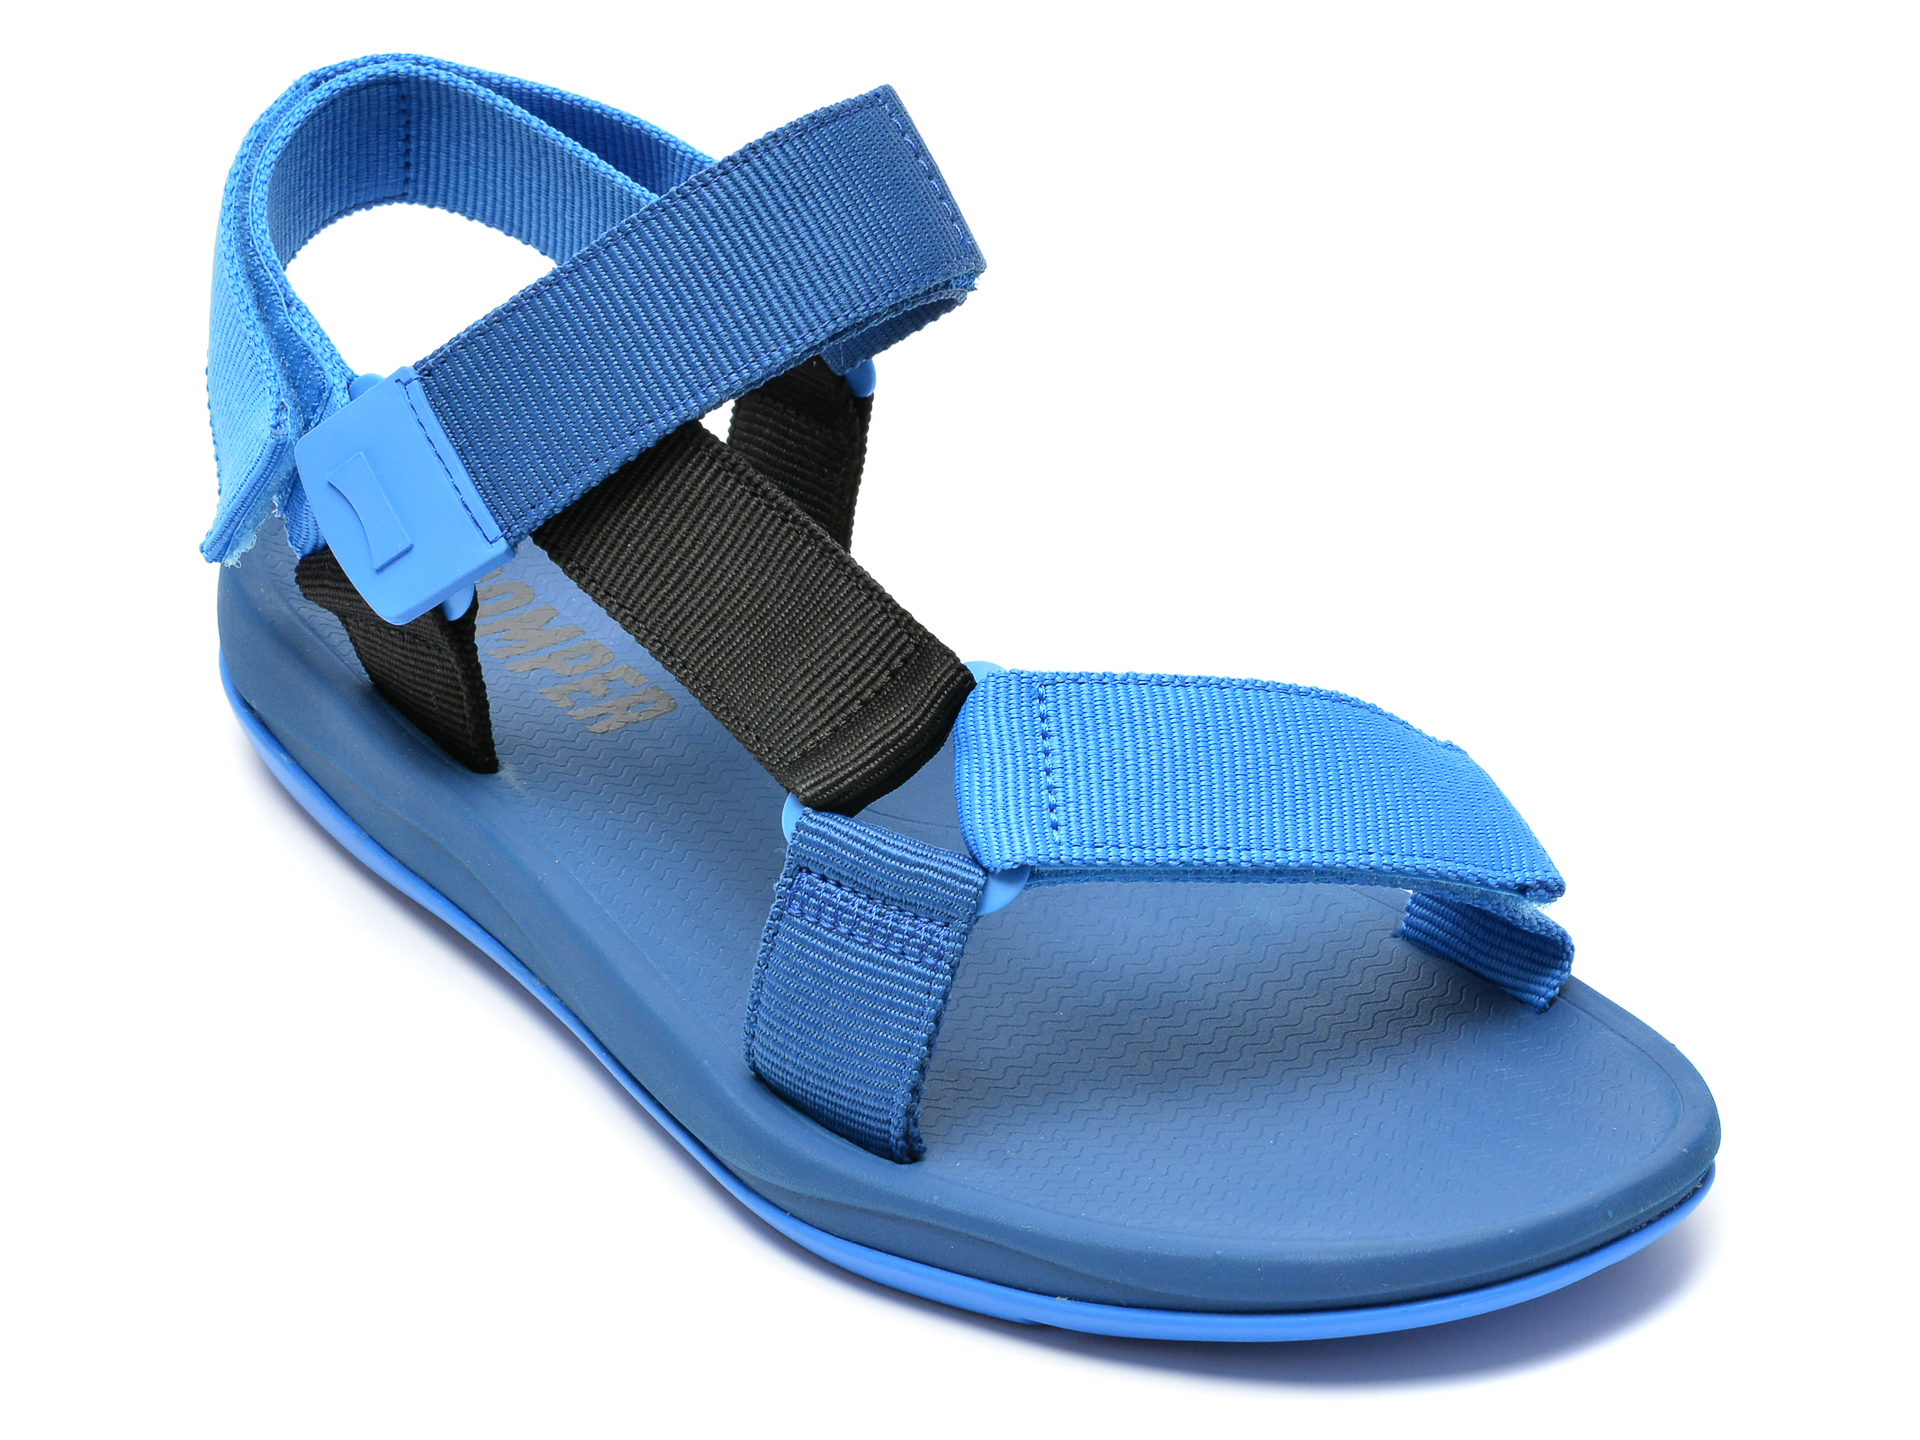 Sandale CAMPER albastre, K100539, din material textil Camper imagine 2022 13clothing.ro